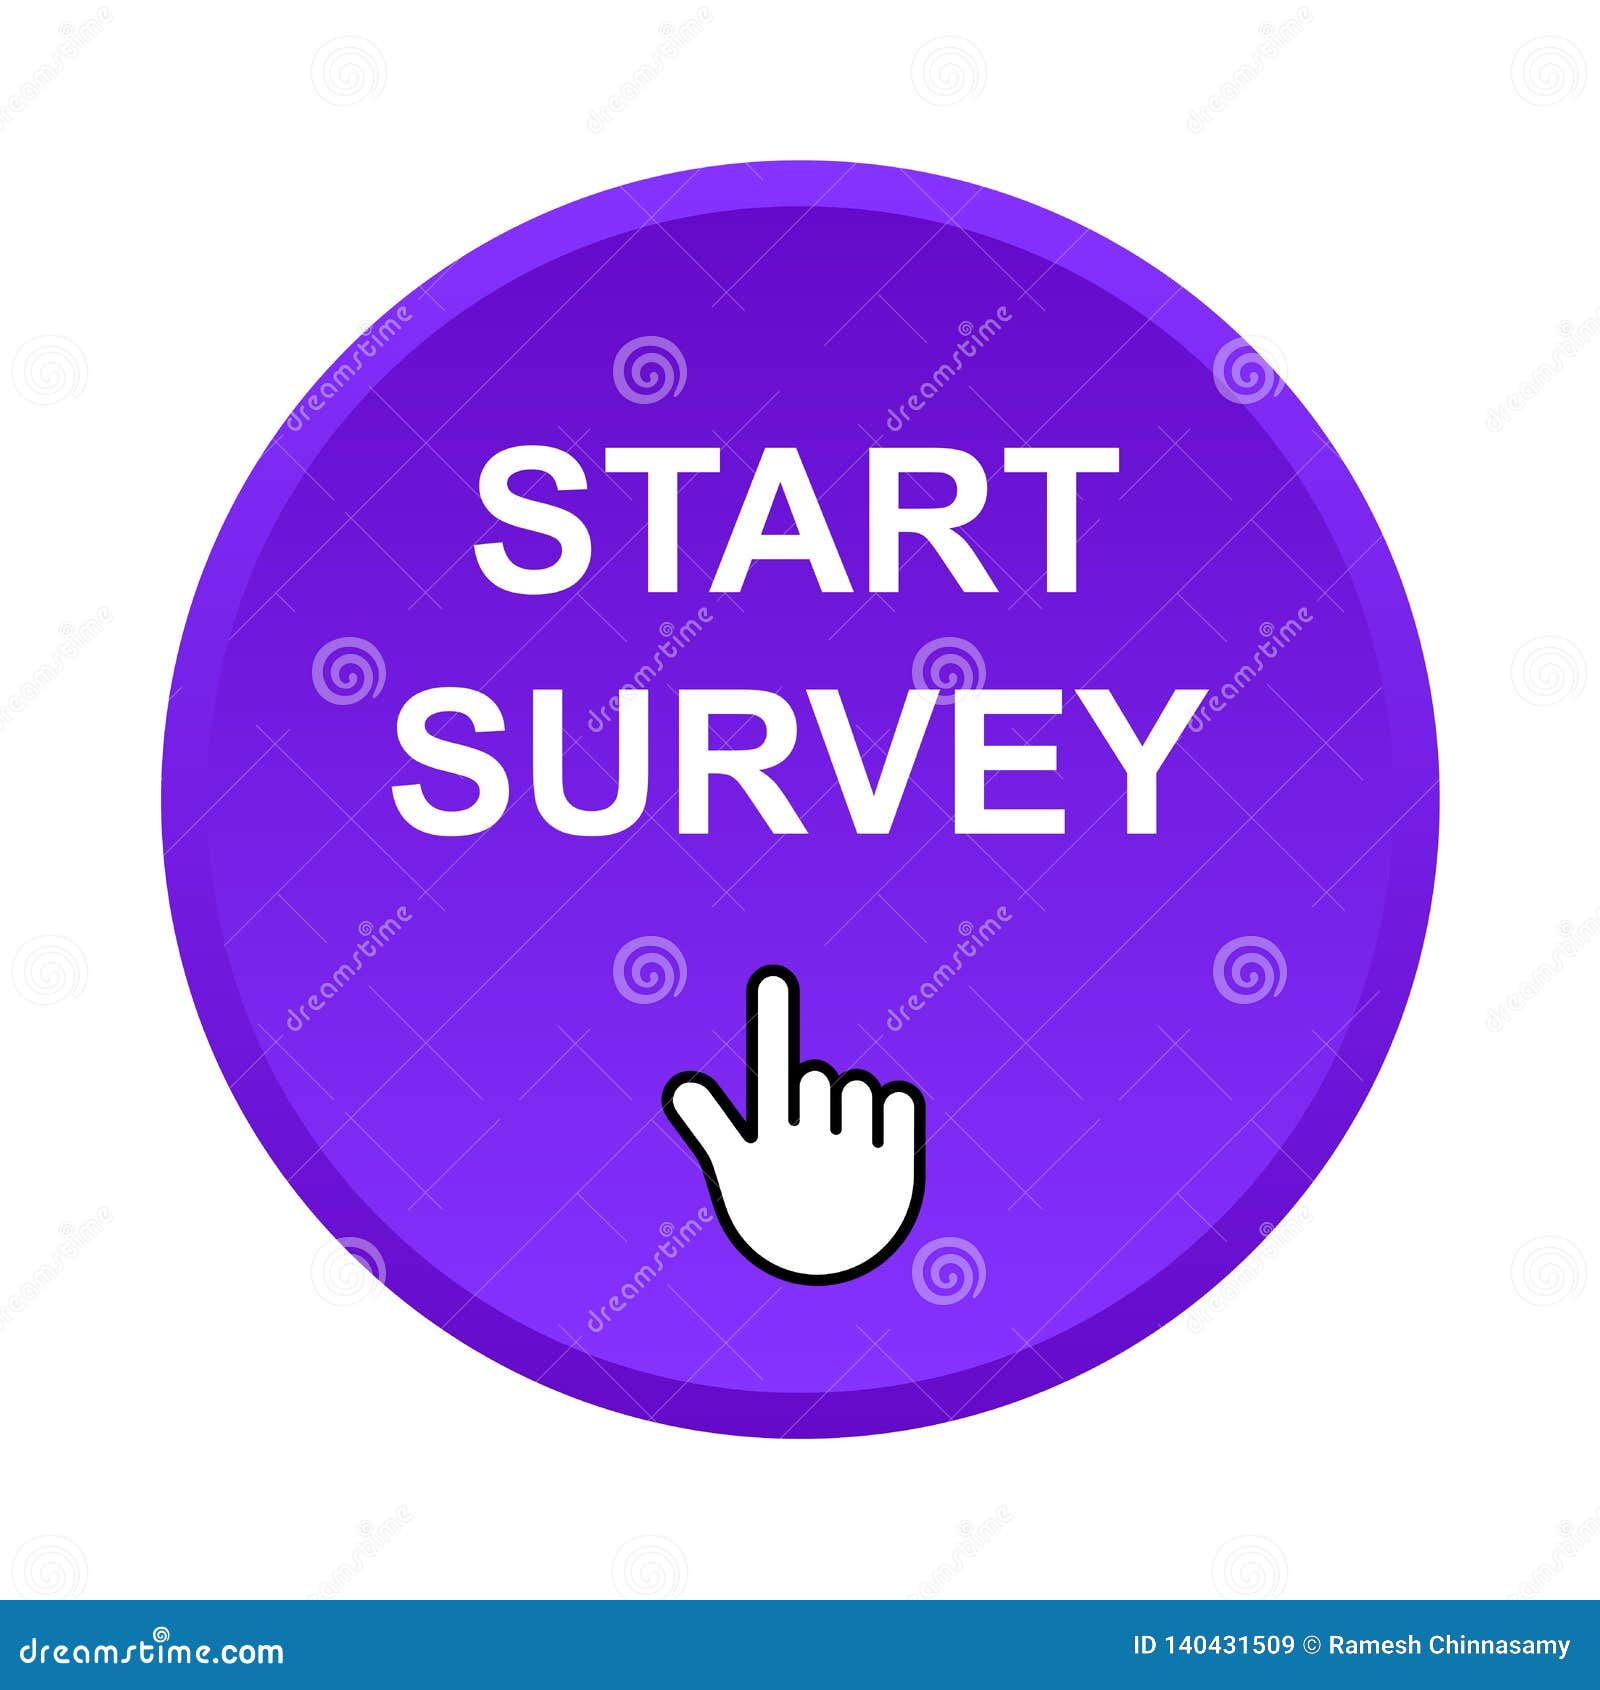 Start survey button stock vector. Illustration of advertisement - 140431569